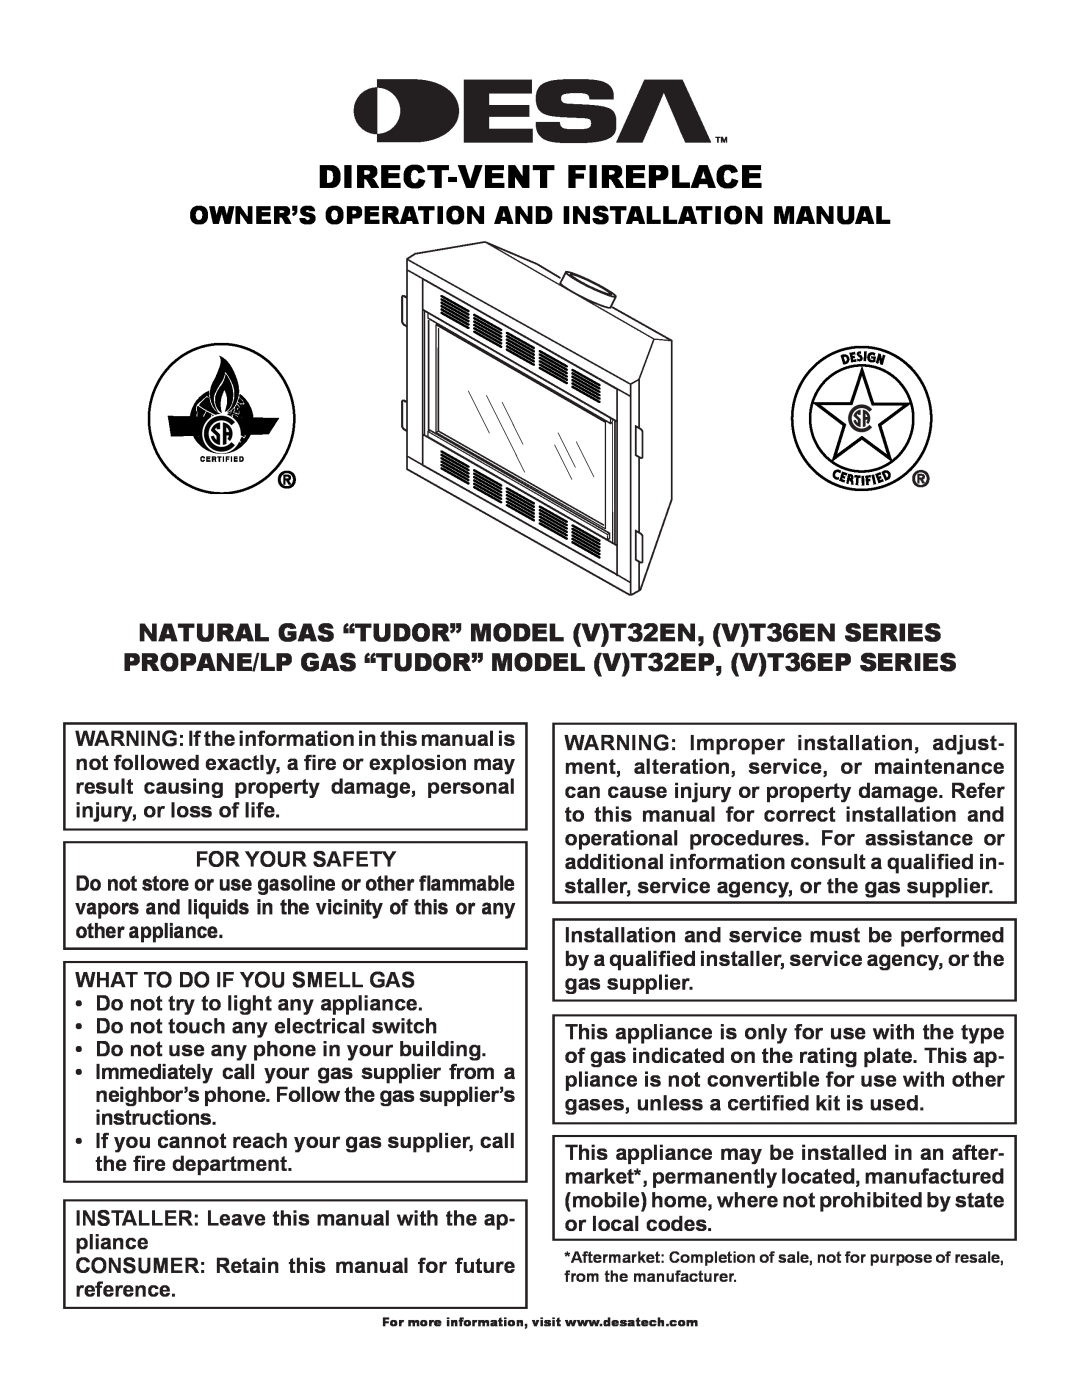 Desa (V)T32EN installation manual Owner’S Operation And Installation Manual, Direct-Vent Fireplace 